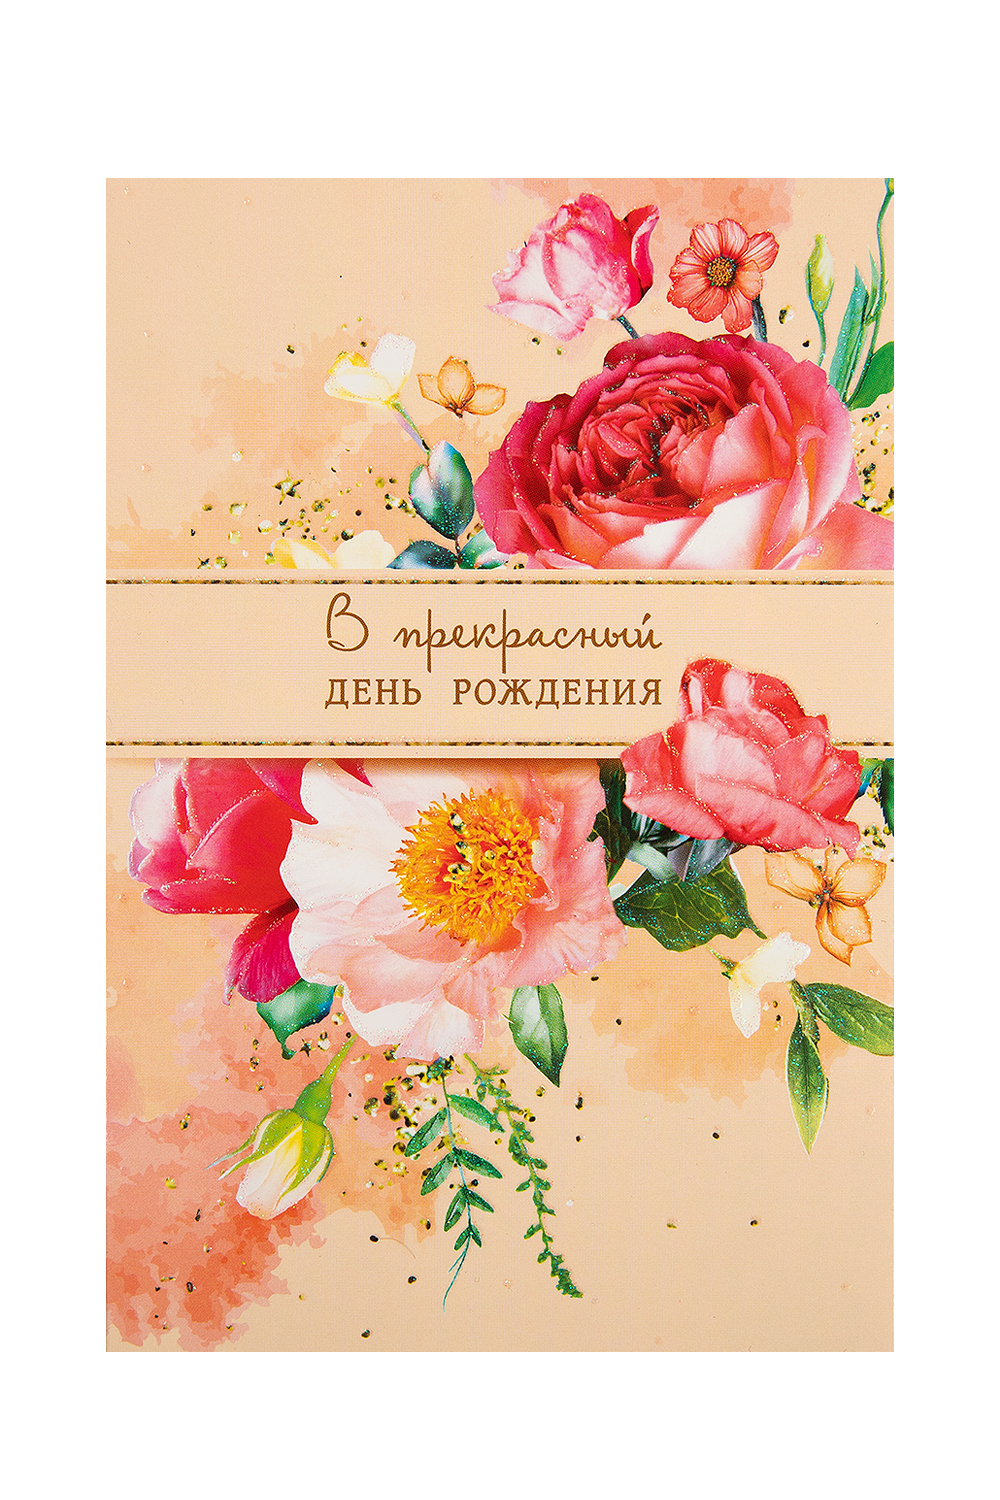 Открытки цветы: векторные изображения и иллюстрации, которые можно скачать бесплатно | Freepik